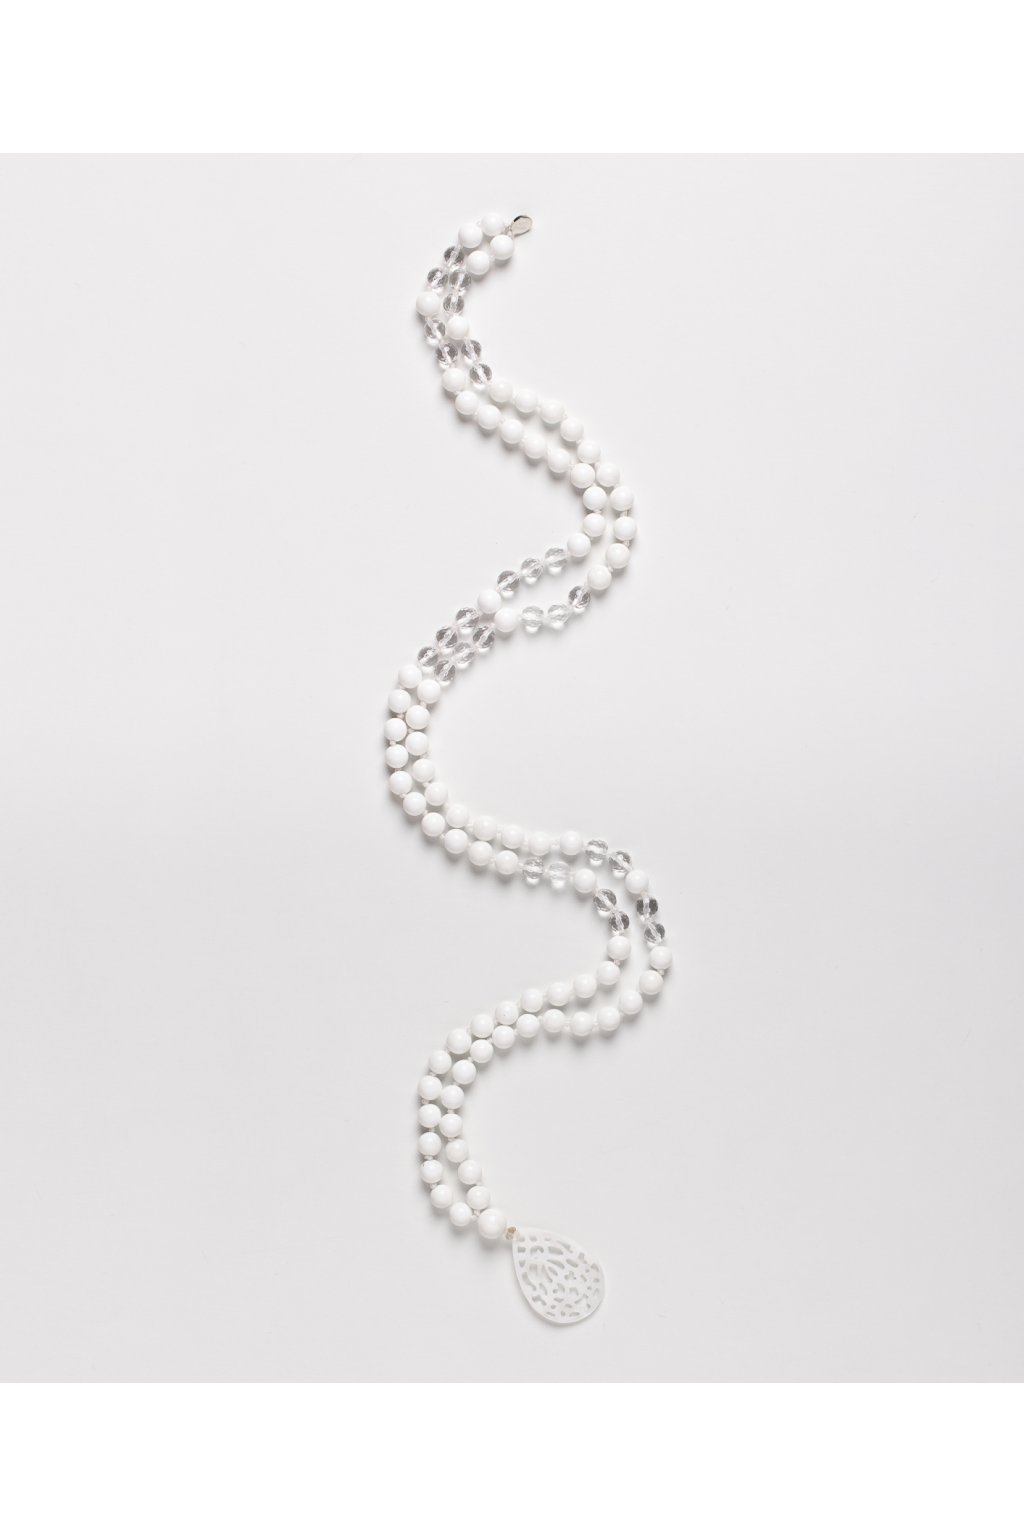 Mala náhrdelník - Bílý korál & křišťál fazetovaný, přívěšek z mušlí -  Spirit Beads